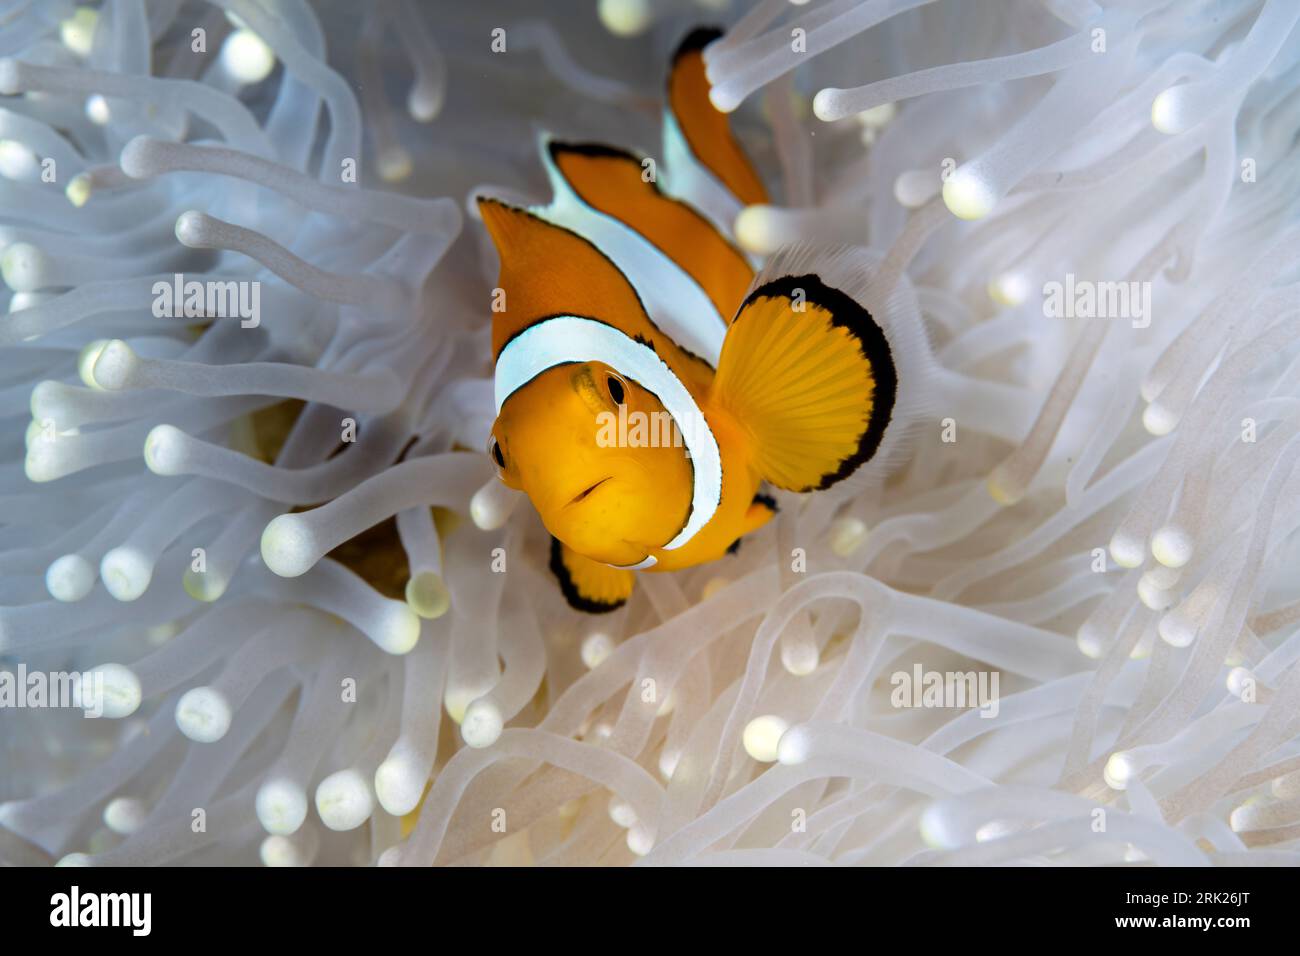 Falso pesce anemone pagliaccio, Amphiprion ocellaris, in un magnifico anemone marino, Heteractis magnifica, Raja Ampat Indonesia Foto Stock